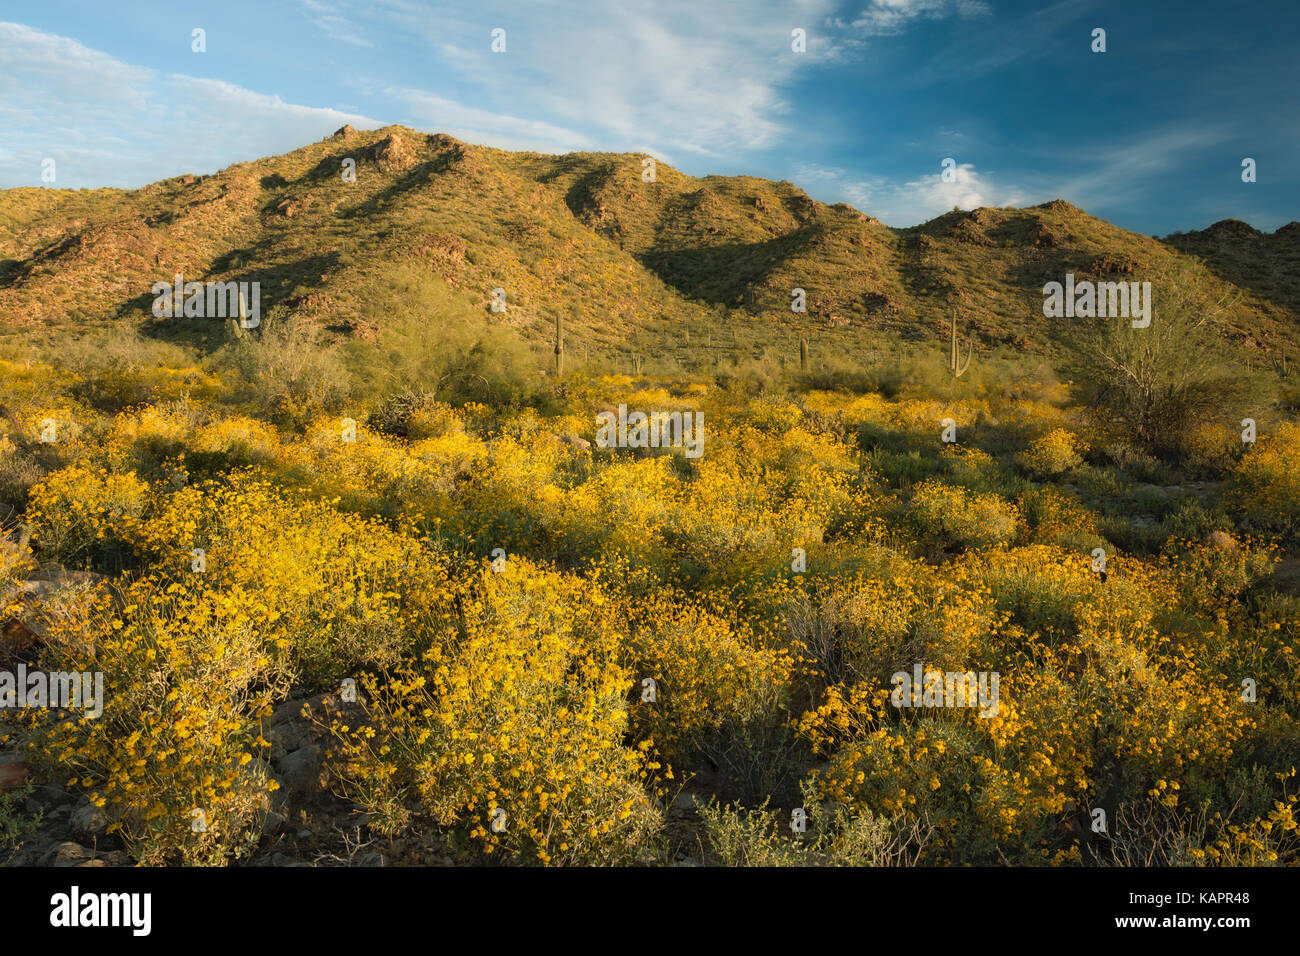 La mattina presto luce sulla molla di bloom di brittlebush in Arizona Vasca bianca montagna parco regionale. Foto Stock